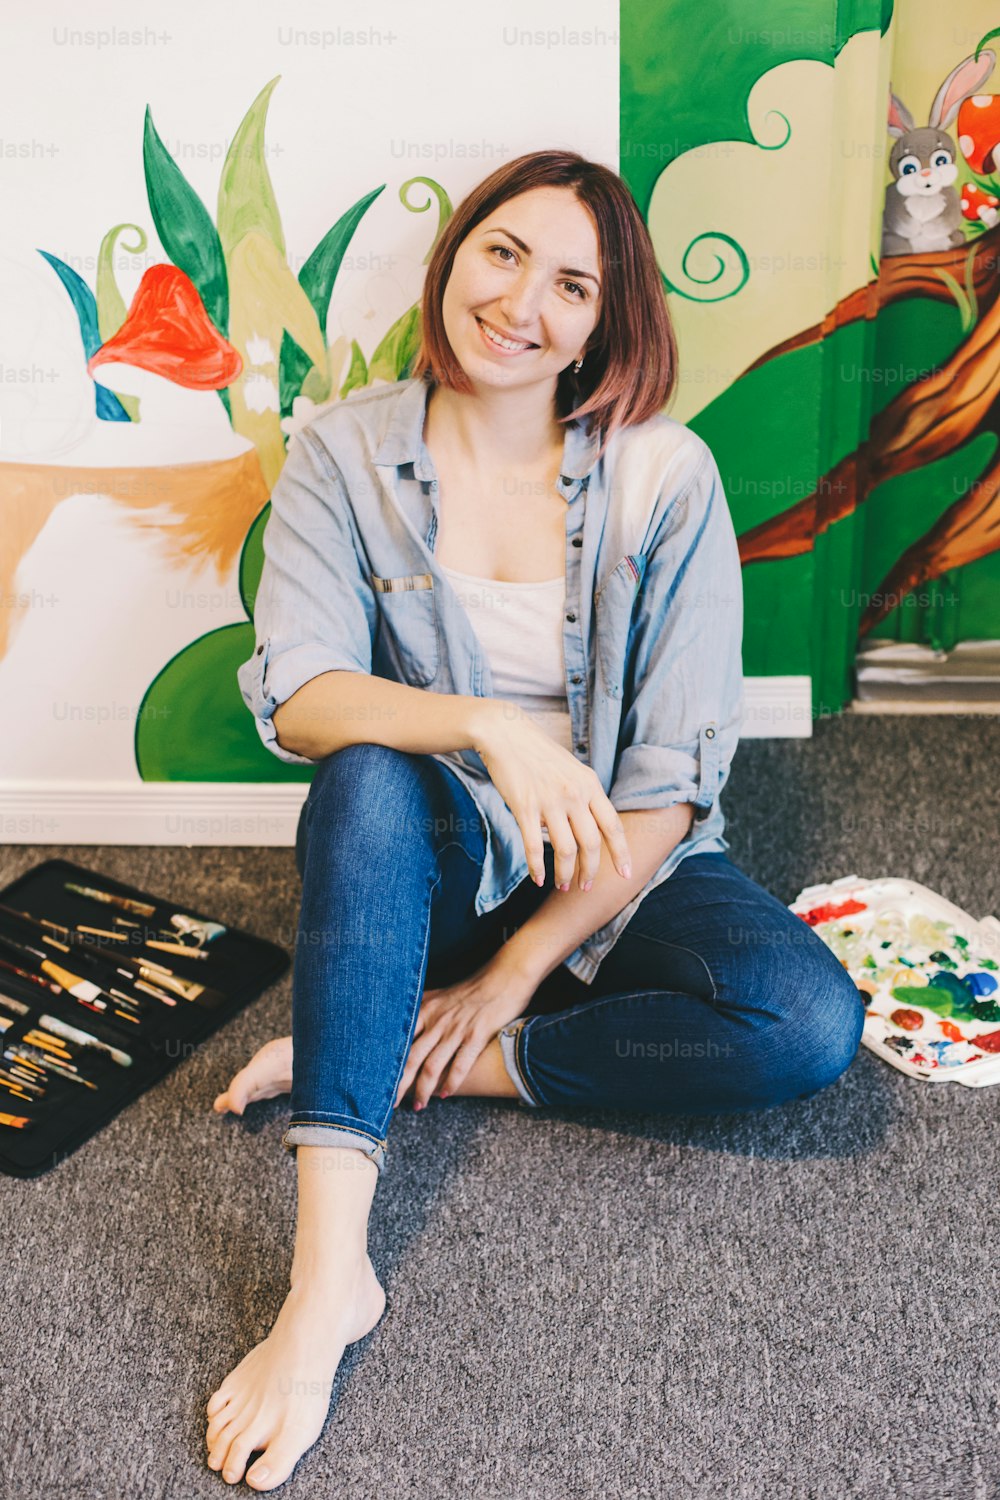 Artista mulher caucasiana relaxando depois de pintar murais à mão nas paredes internas do apartamento ou da escola de estúdio com tintas acrílicas. Hobby criativo e conceito de trabalho artístico freelance side job.